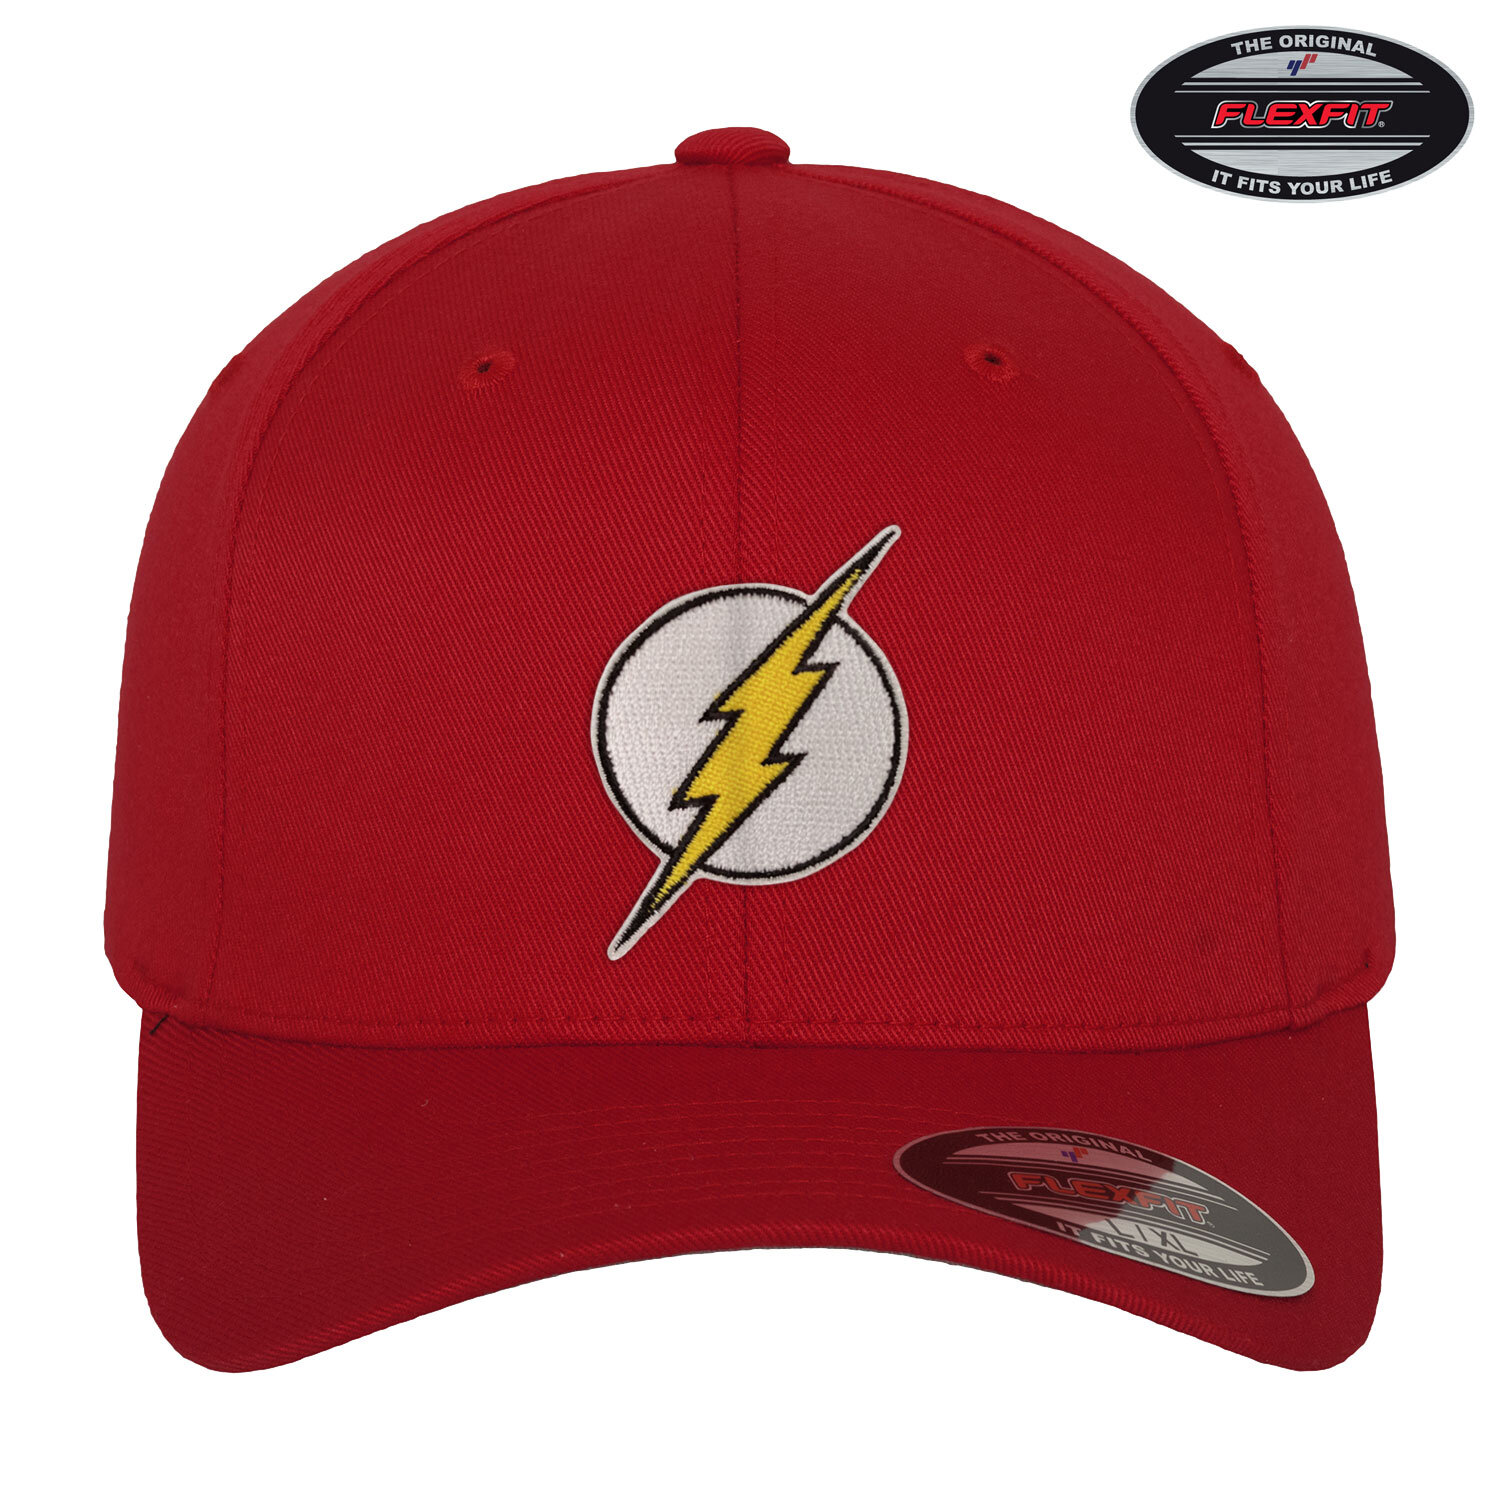 The Flash Premium Flexfit Cap